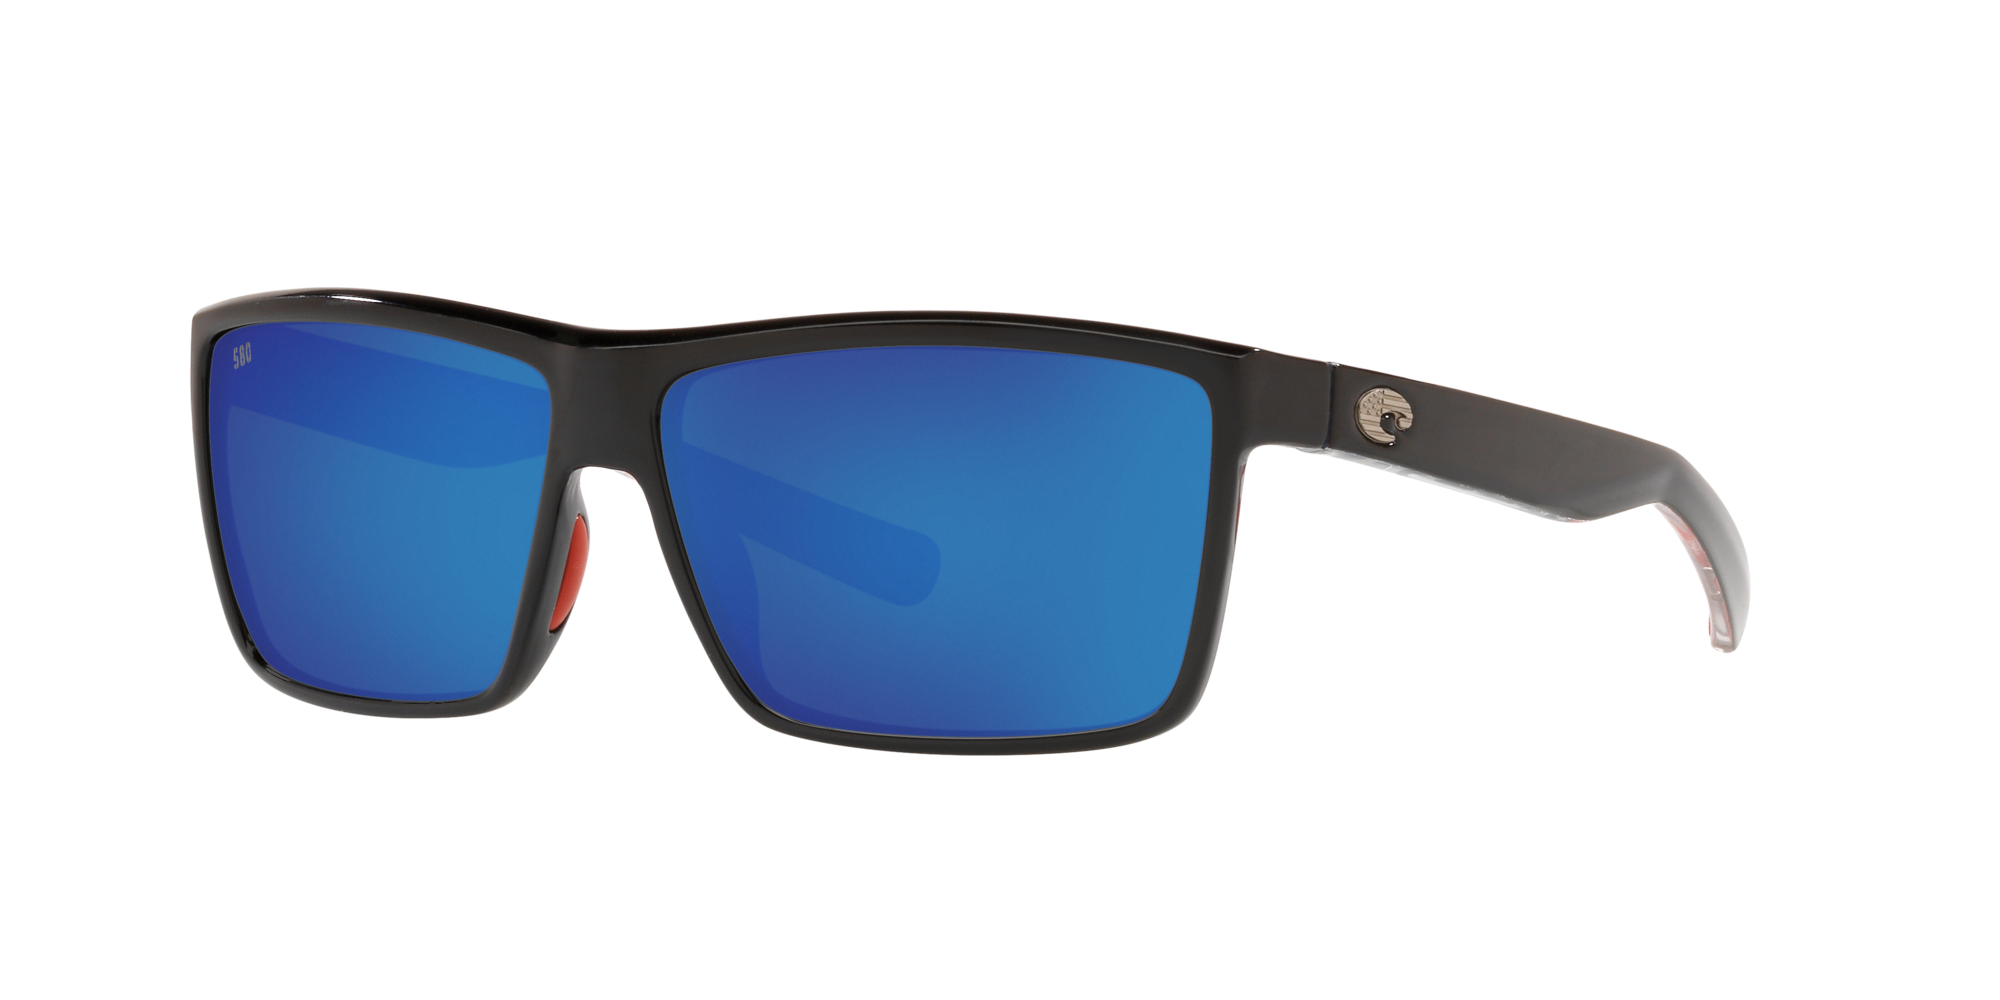 Freedom Series Rinconcito Polarized Sunglasses in Blue Mirror 